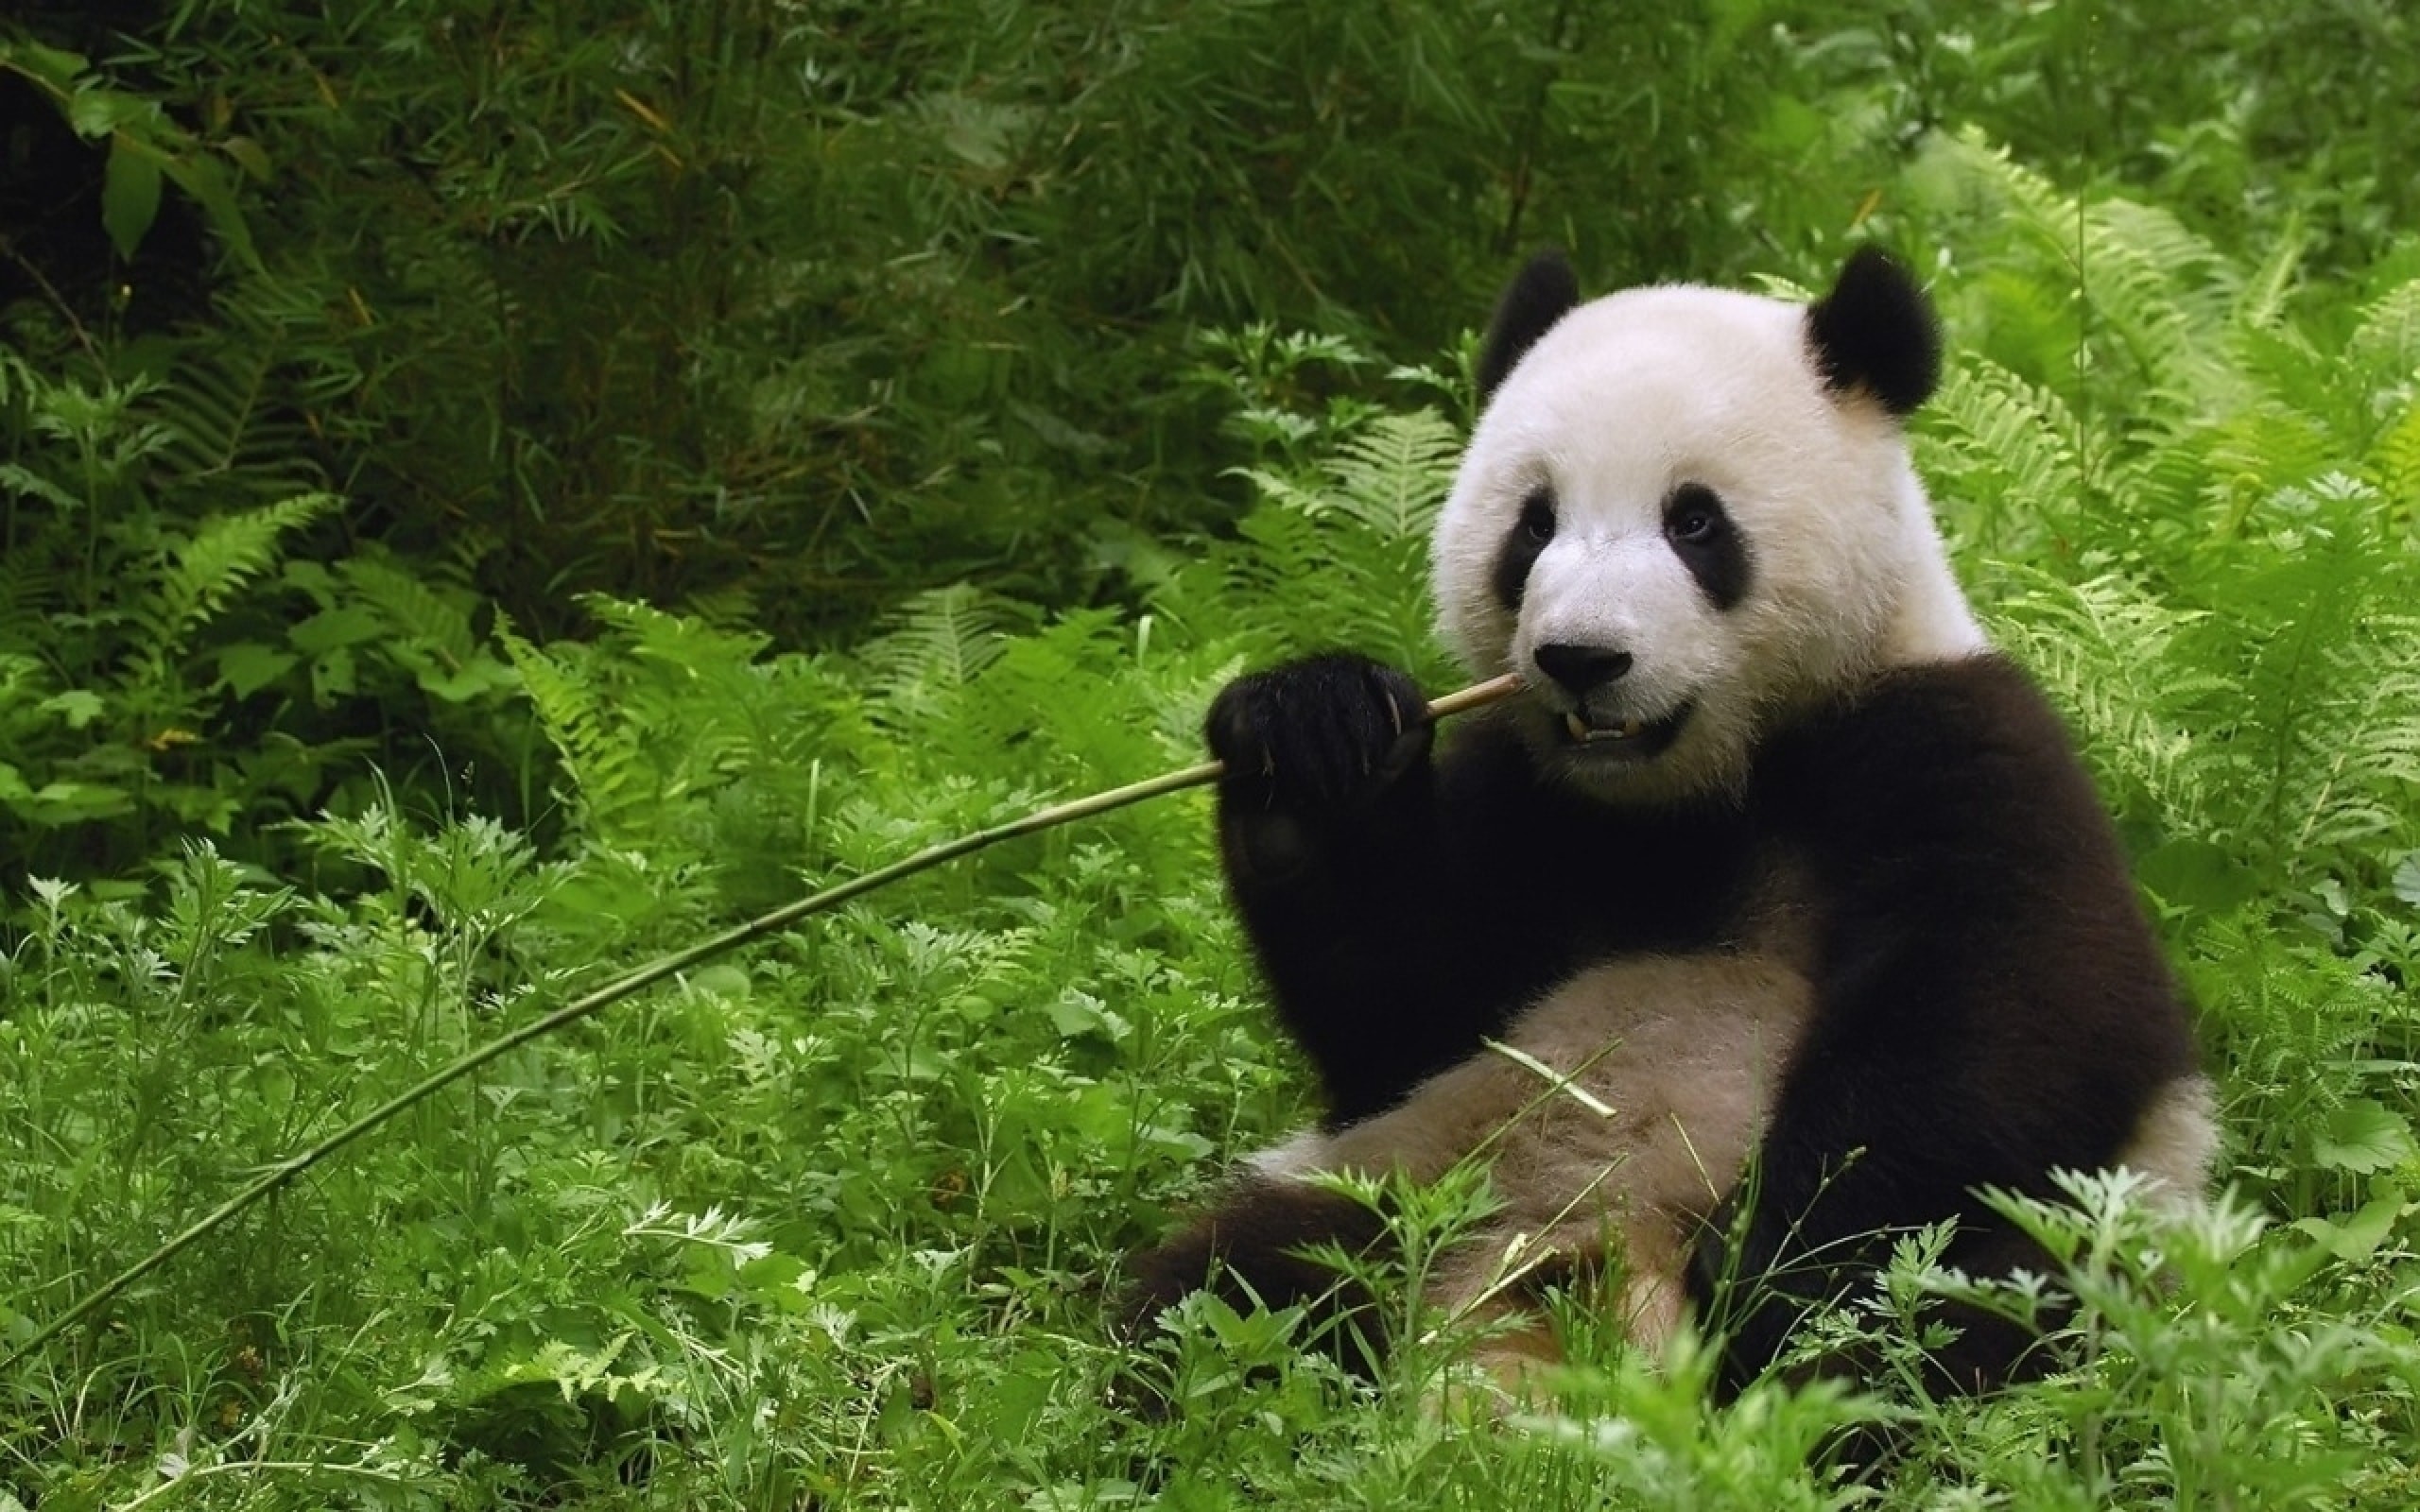 2560x1600 ×× × ×××× ××ª ××××¢ Nolazco on bear panda | Pinterest | Panda and Bears